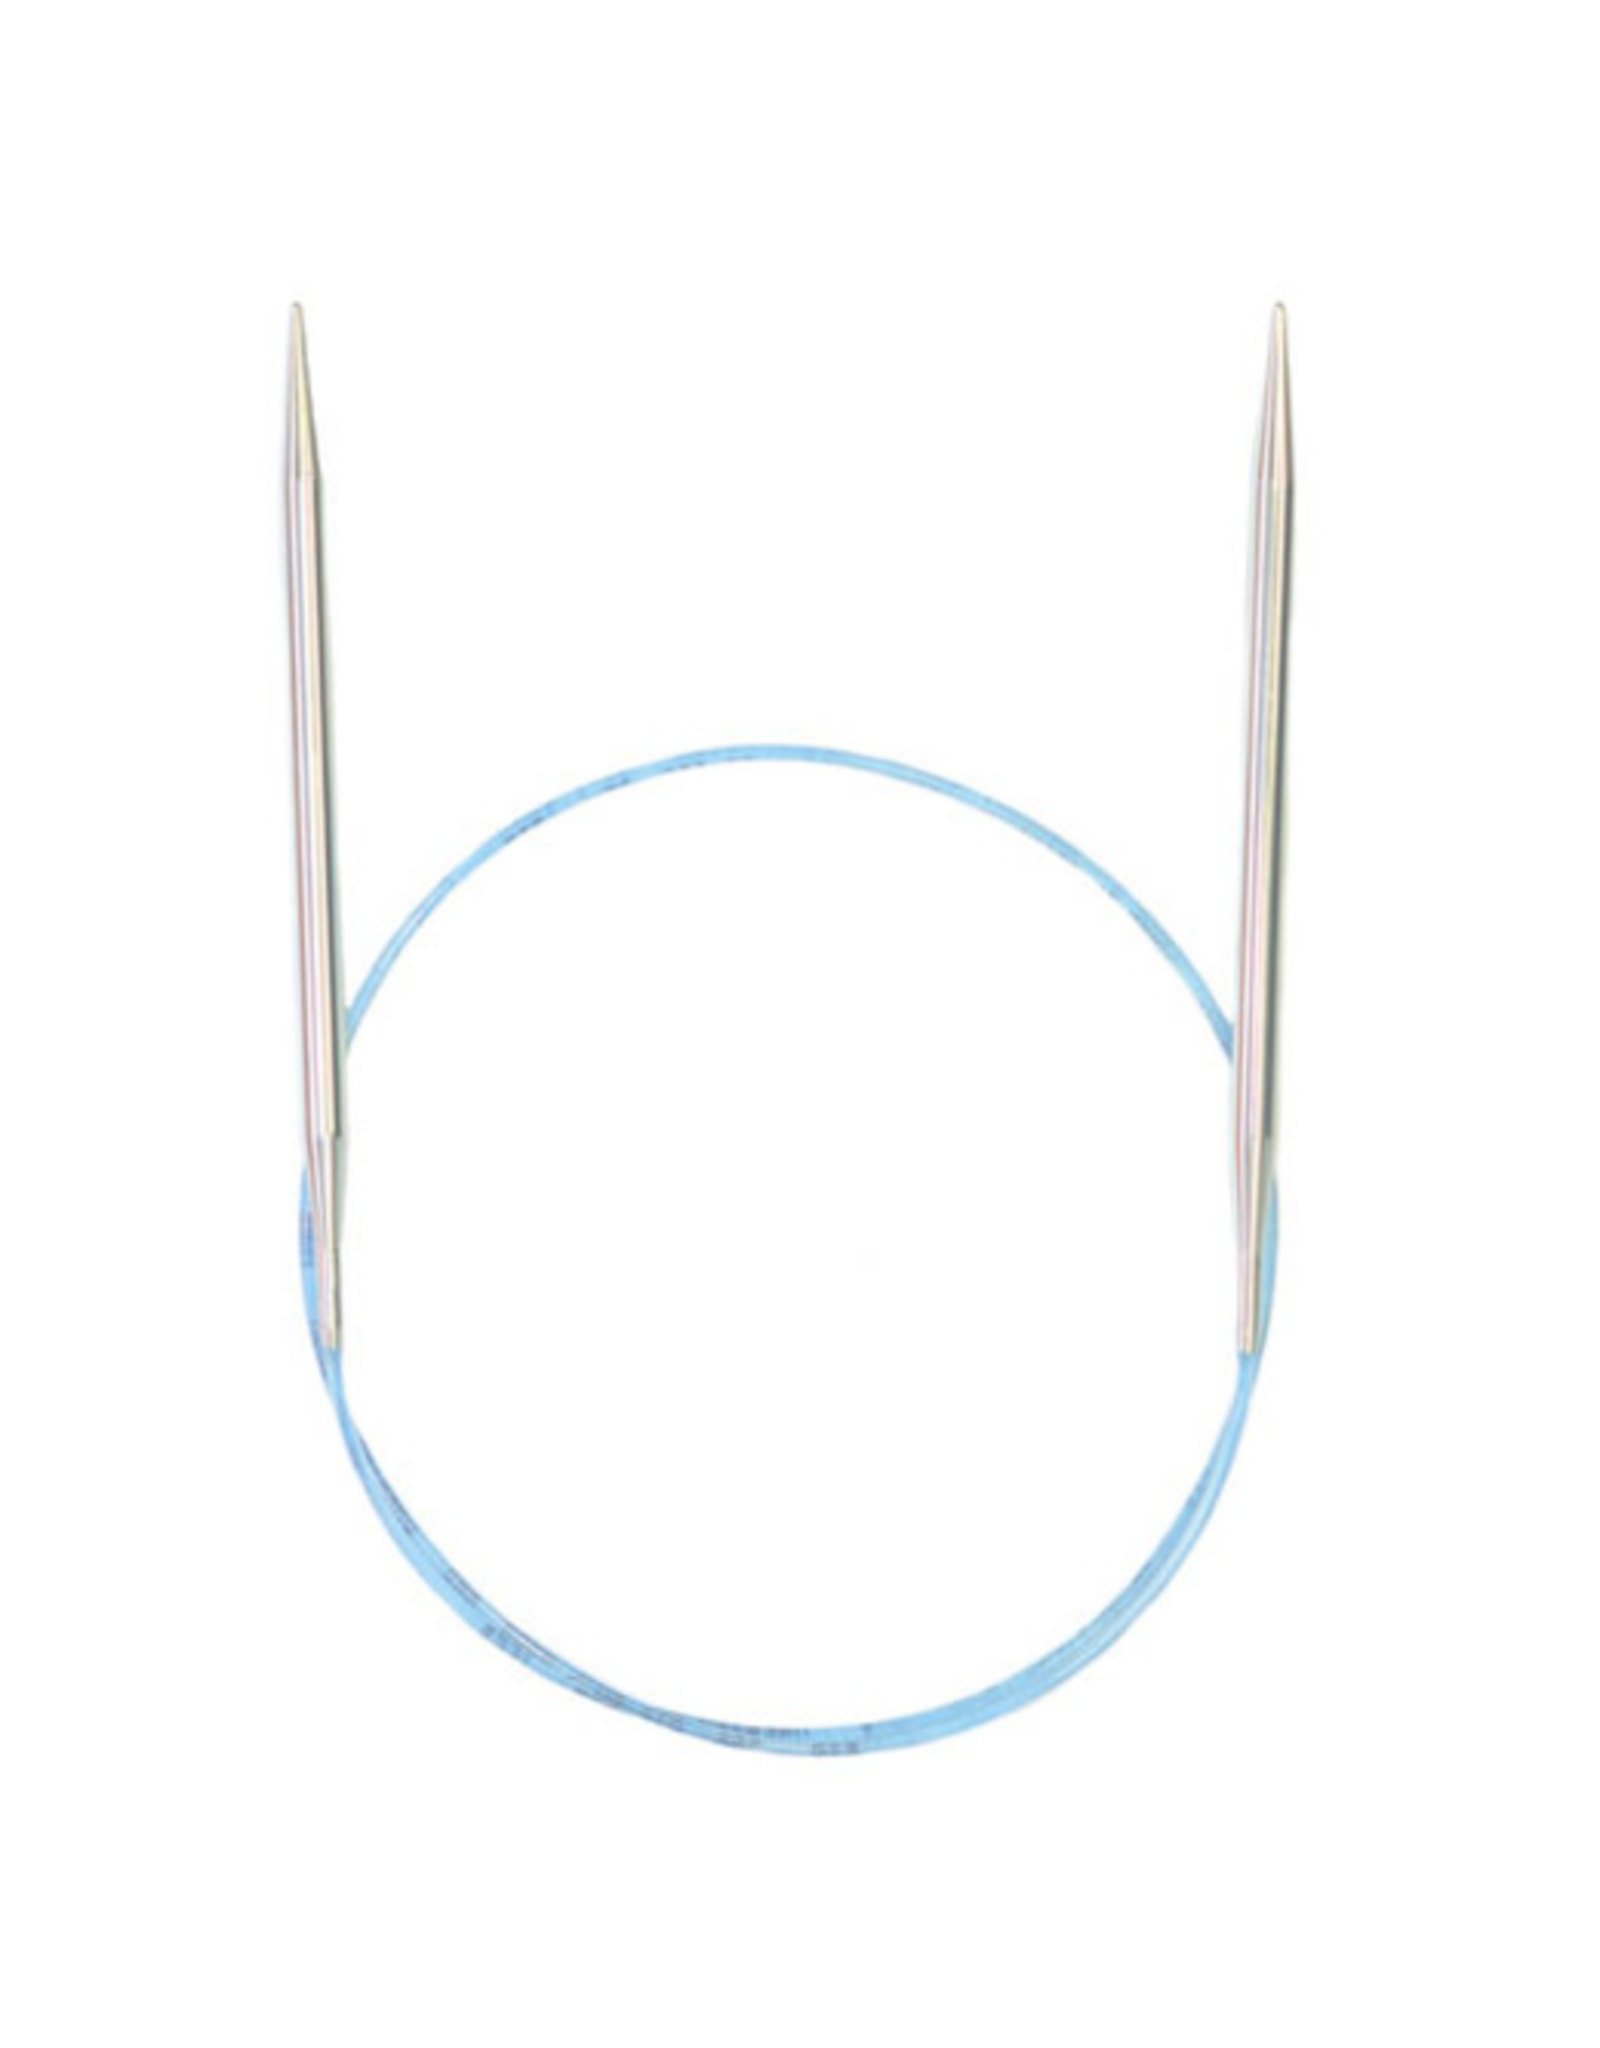 Addi Rockets 16" long circular needle size US 2